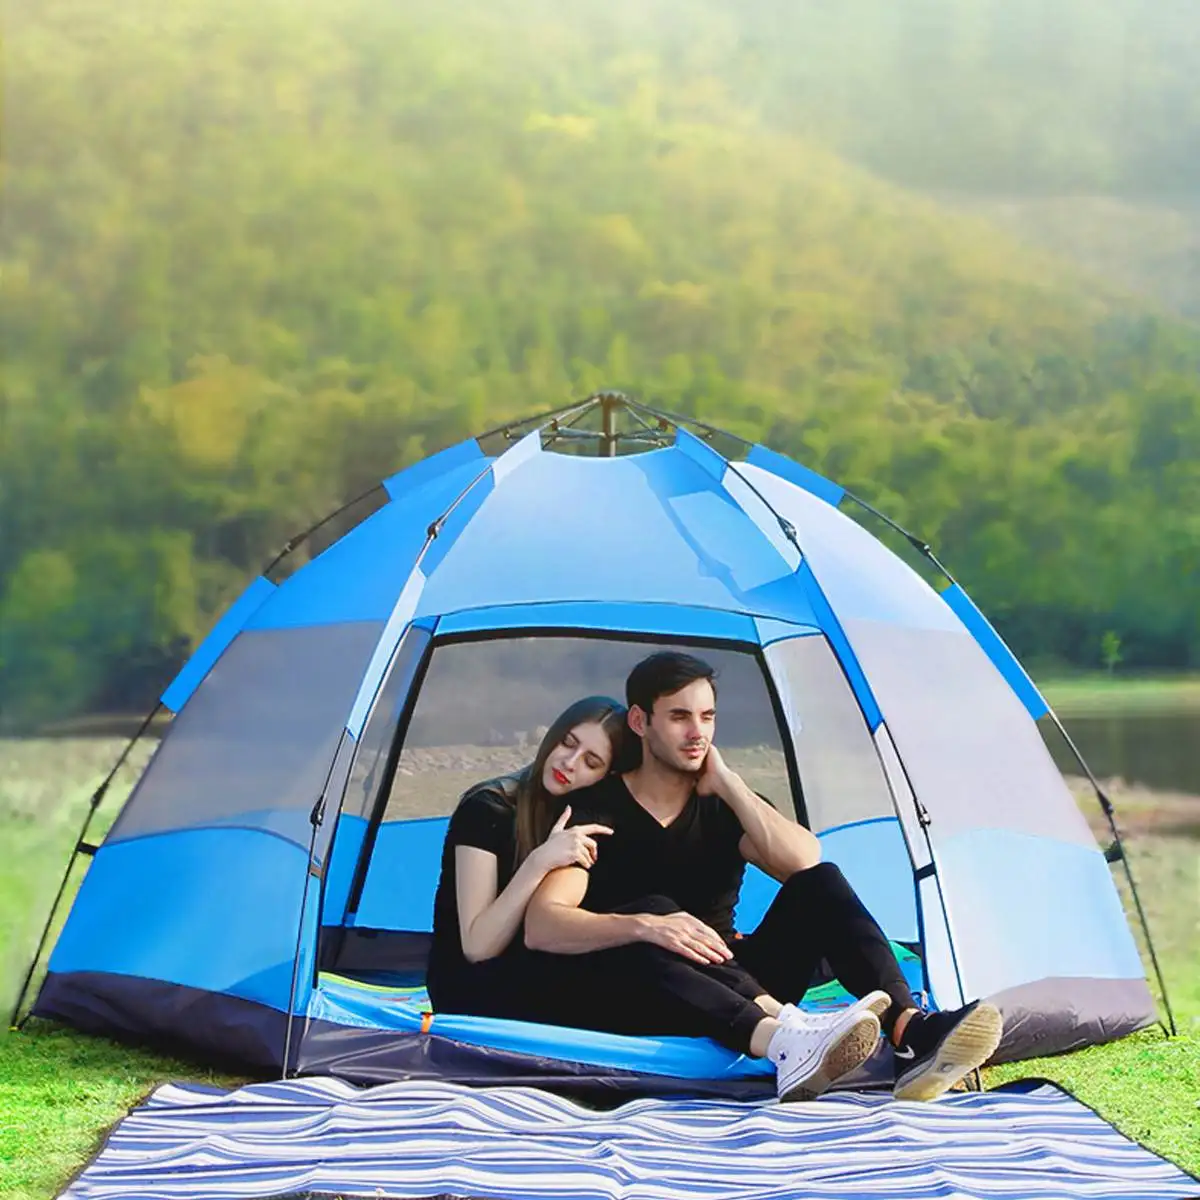 DGODDE водонепроницаемый 5-8 человек Автоматический Мгновенный Всплывающий семейный тент Кемпинг туристический тент анти УФ тент палатки открытый солнцезащитный навес